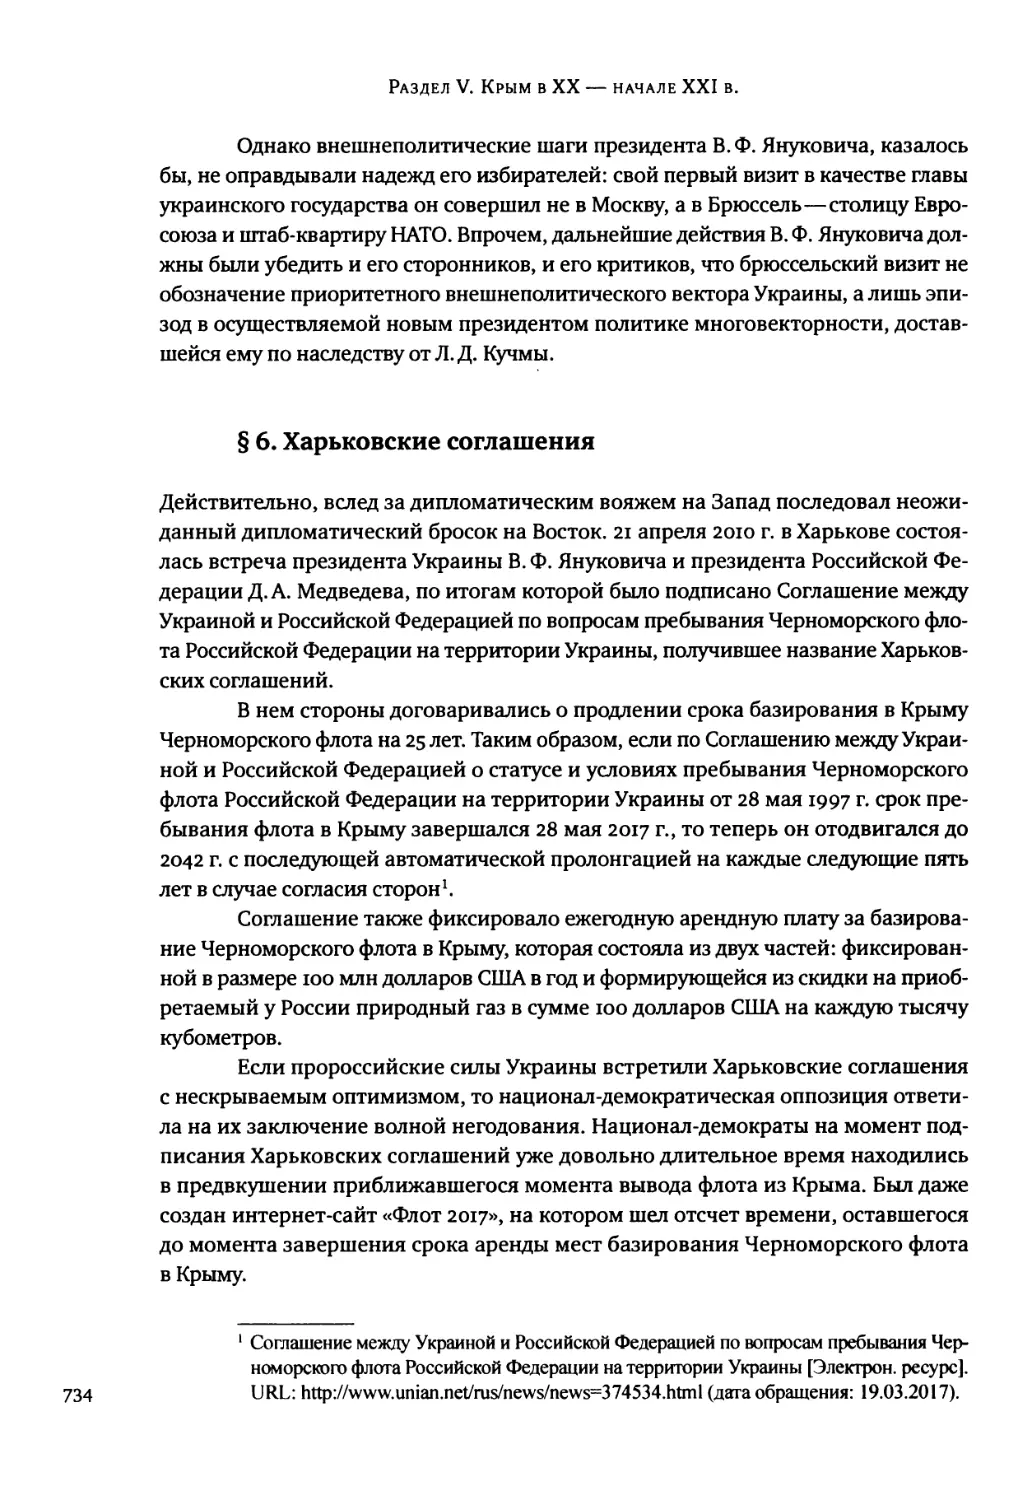 § 6. Харьковские соглашения